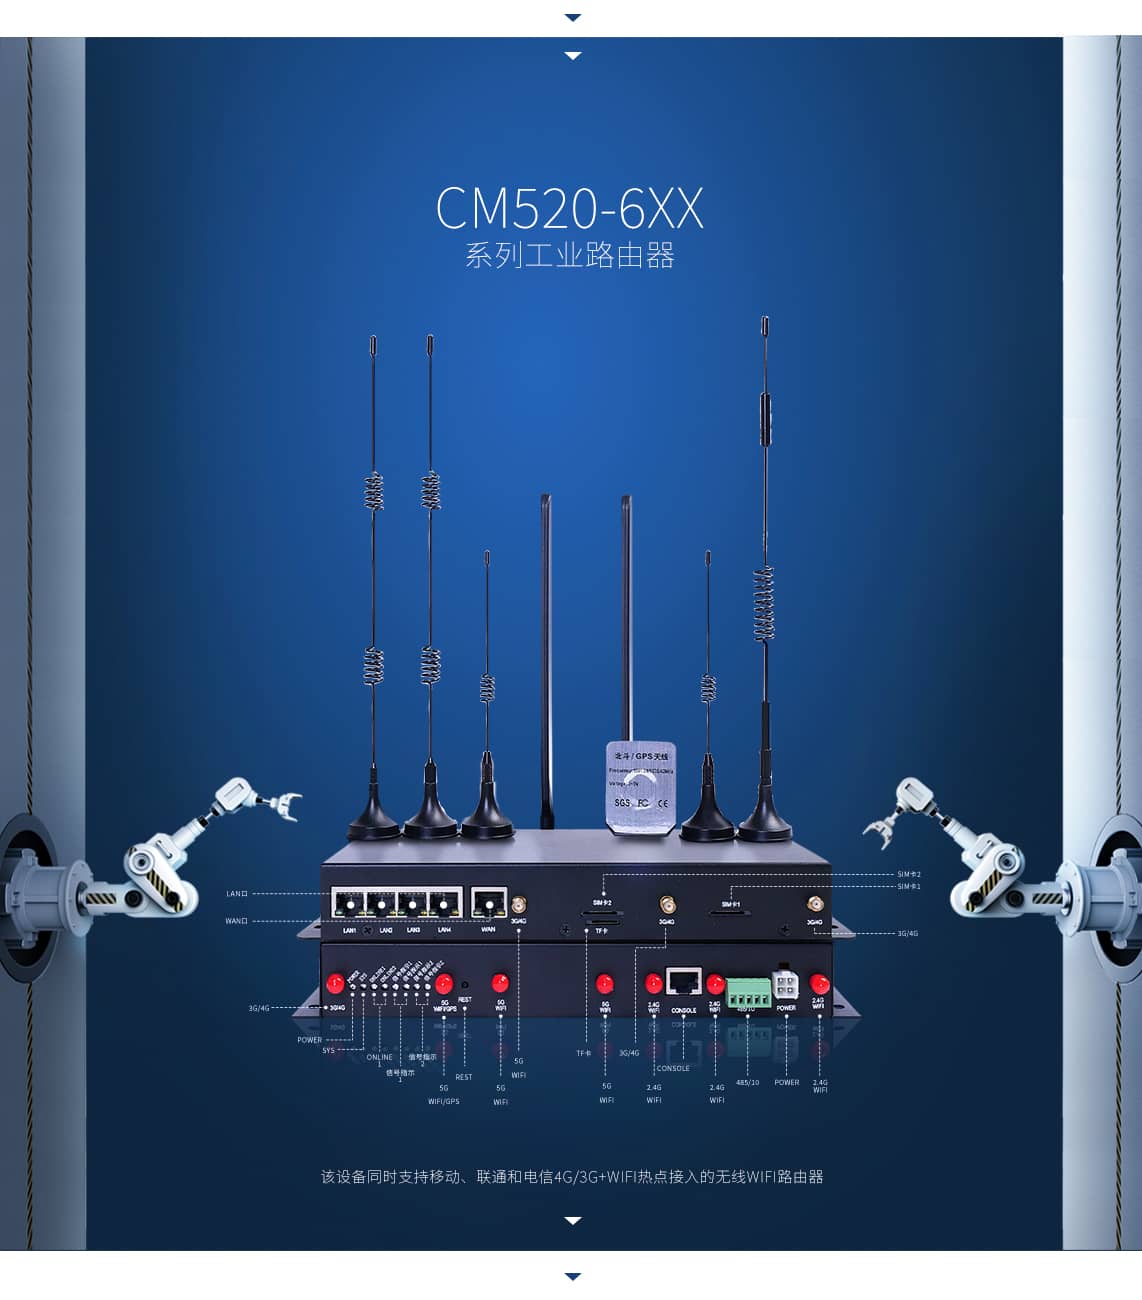 CM520-6XX系列工业路由器